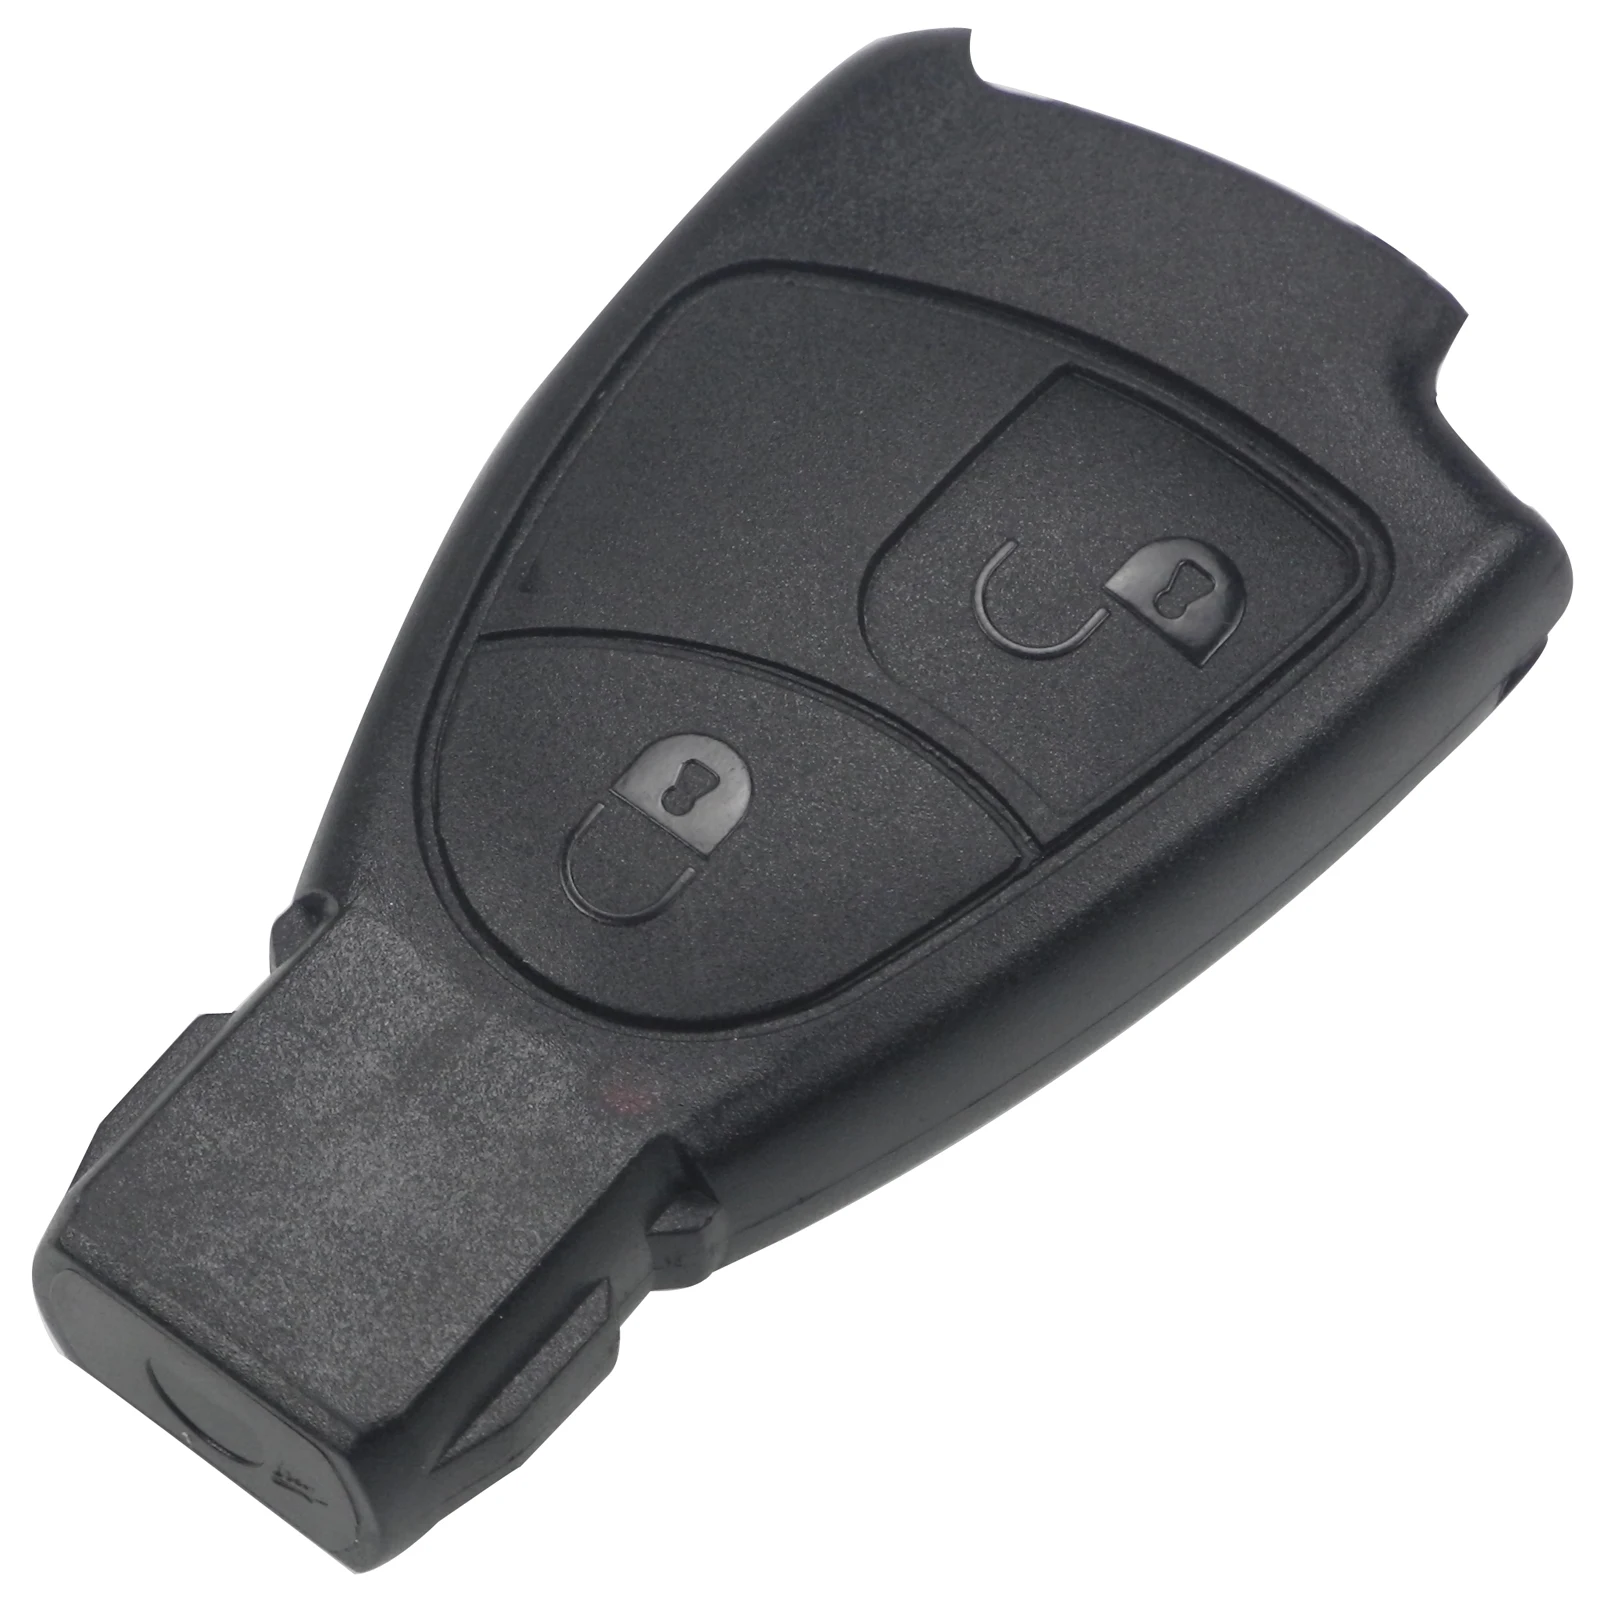 Maizhi 2/3/4 Tlačidlá Nahradenie Smart Remote Kľúča Vozidla púzdro FOB na Mercedes Benz B C E ML S CL, CLK Smart Key Č Logo